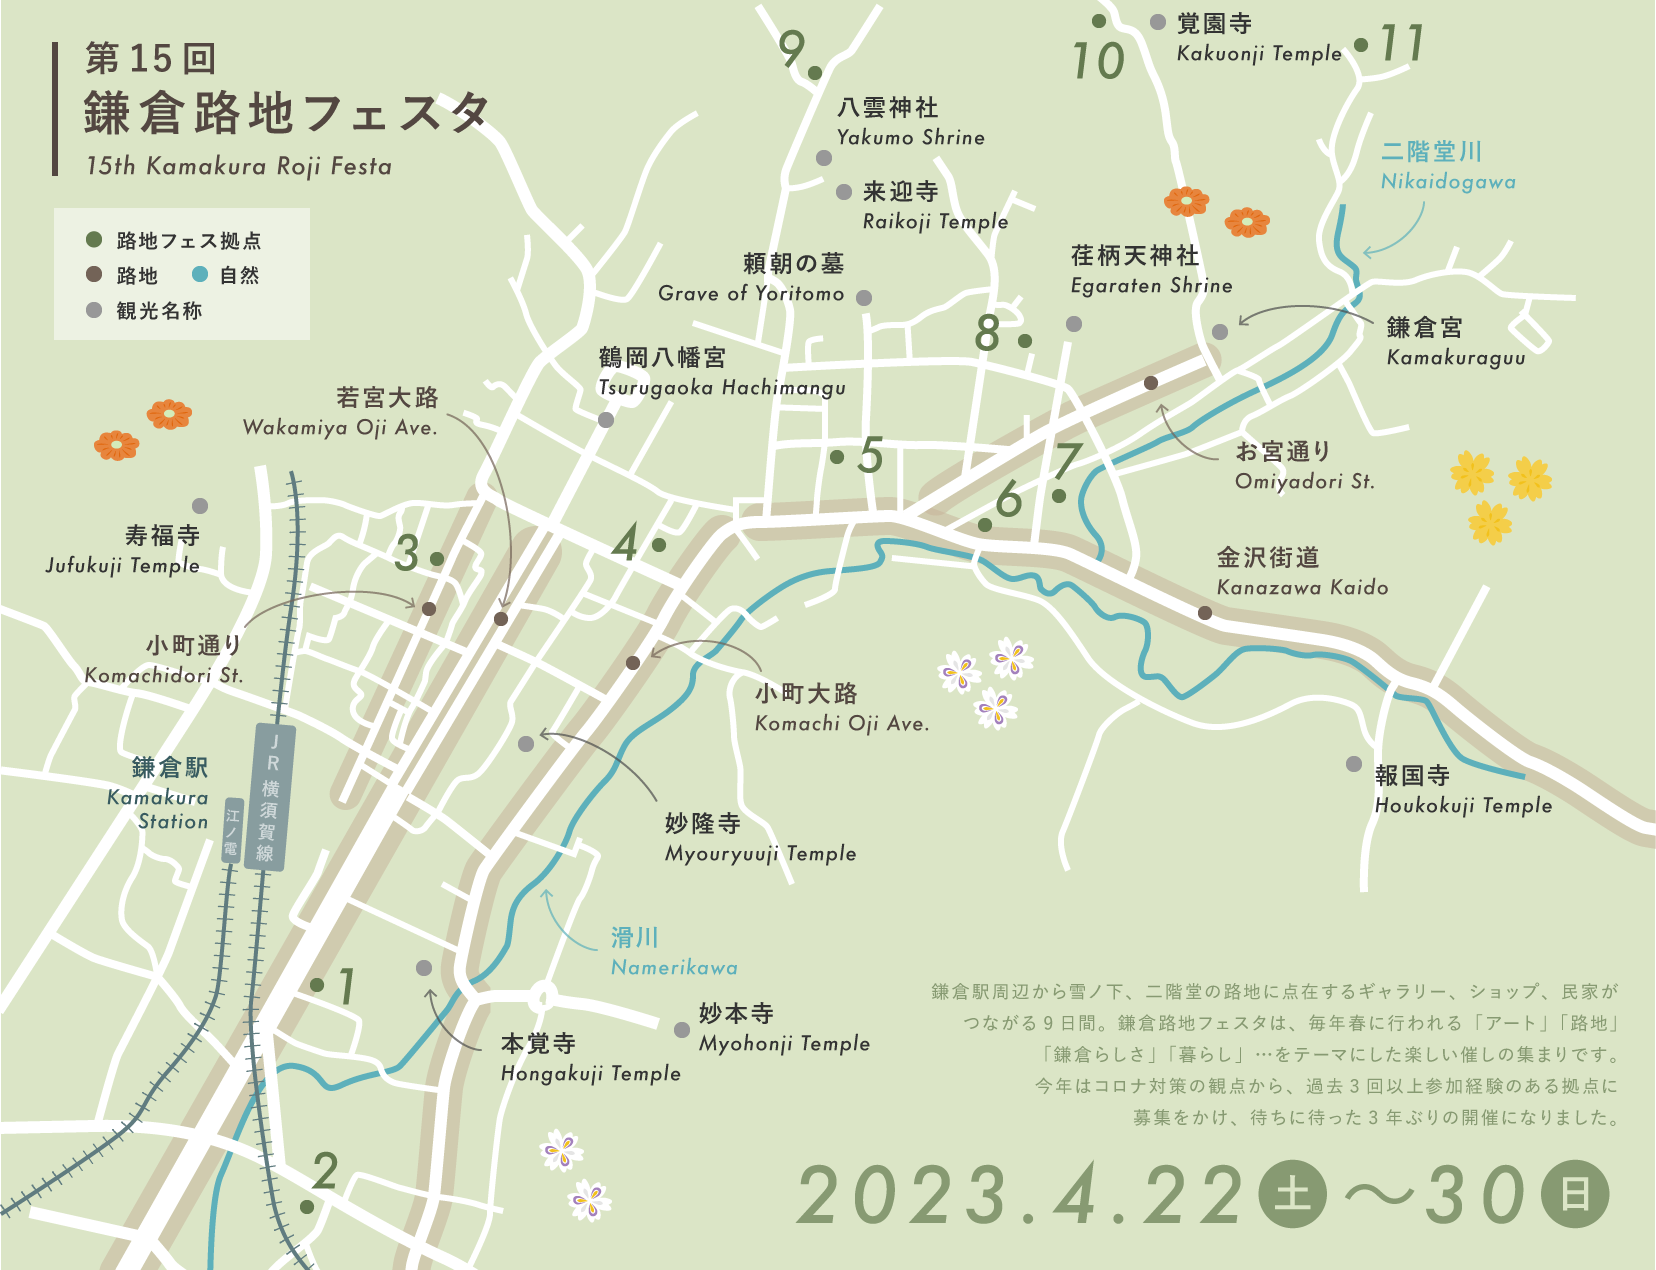 鎌倉路地フェスマップ